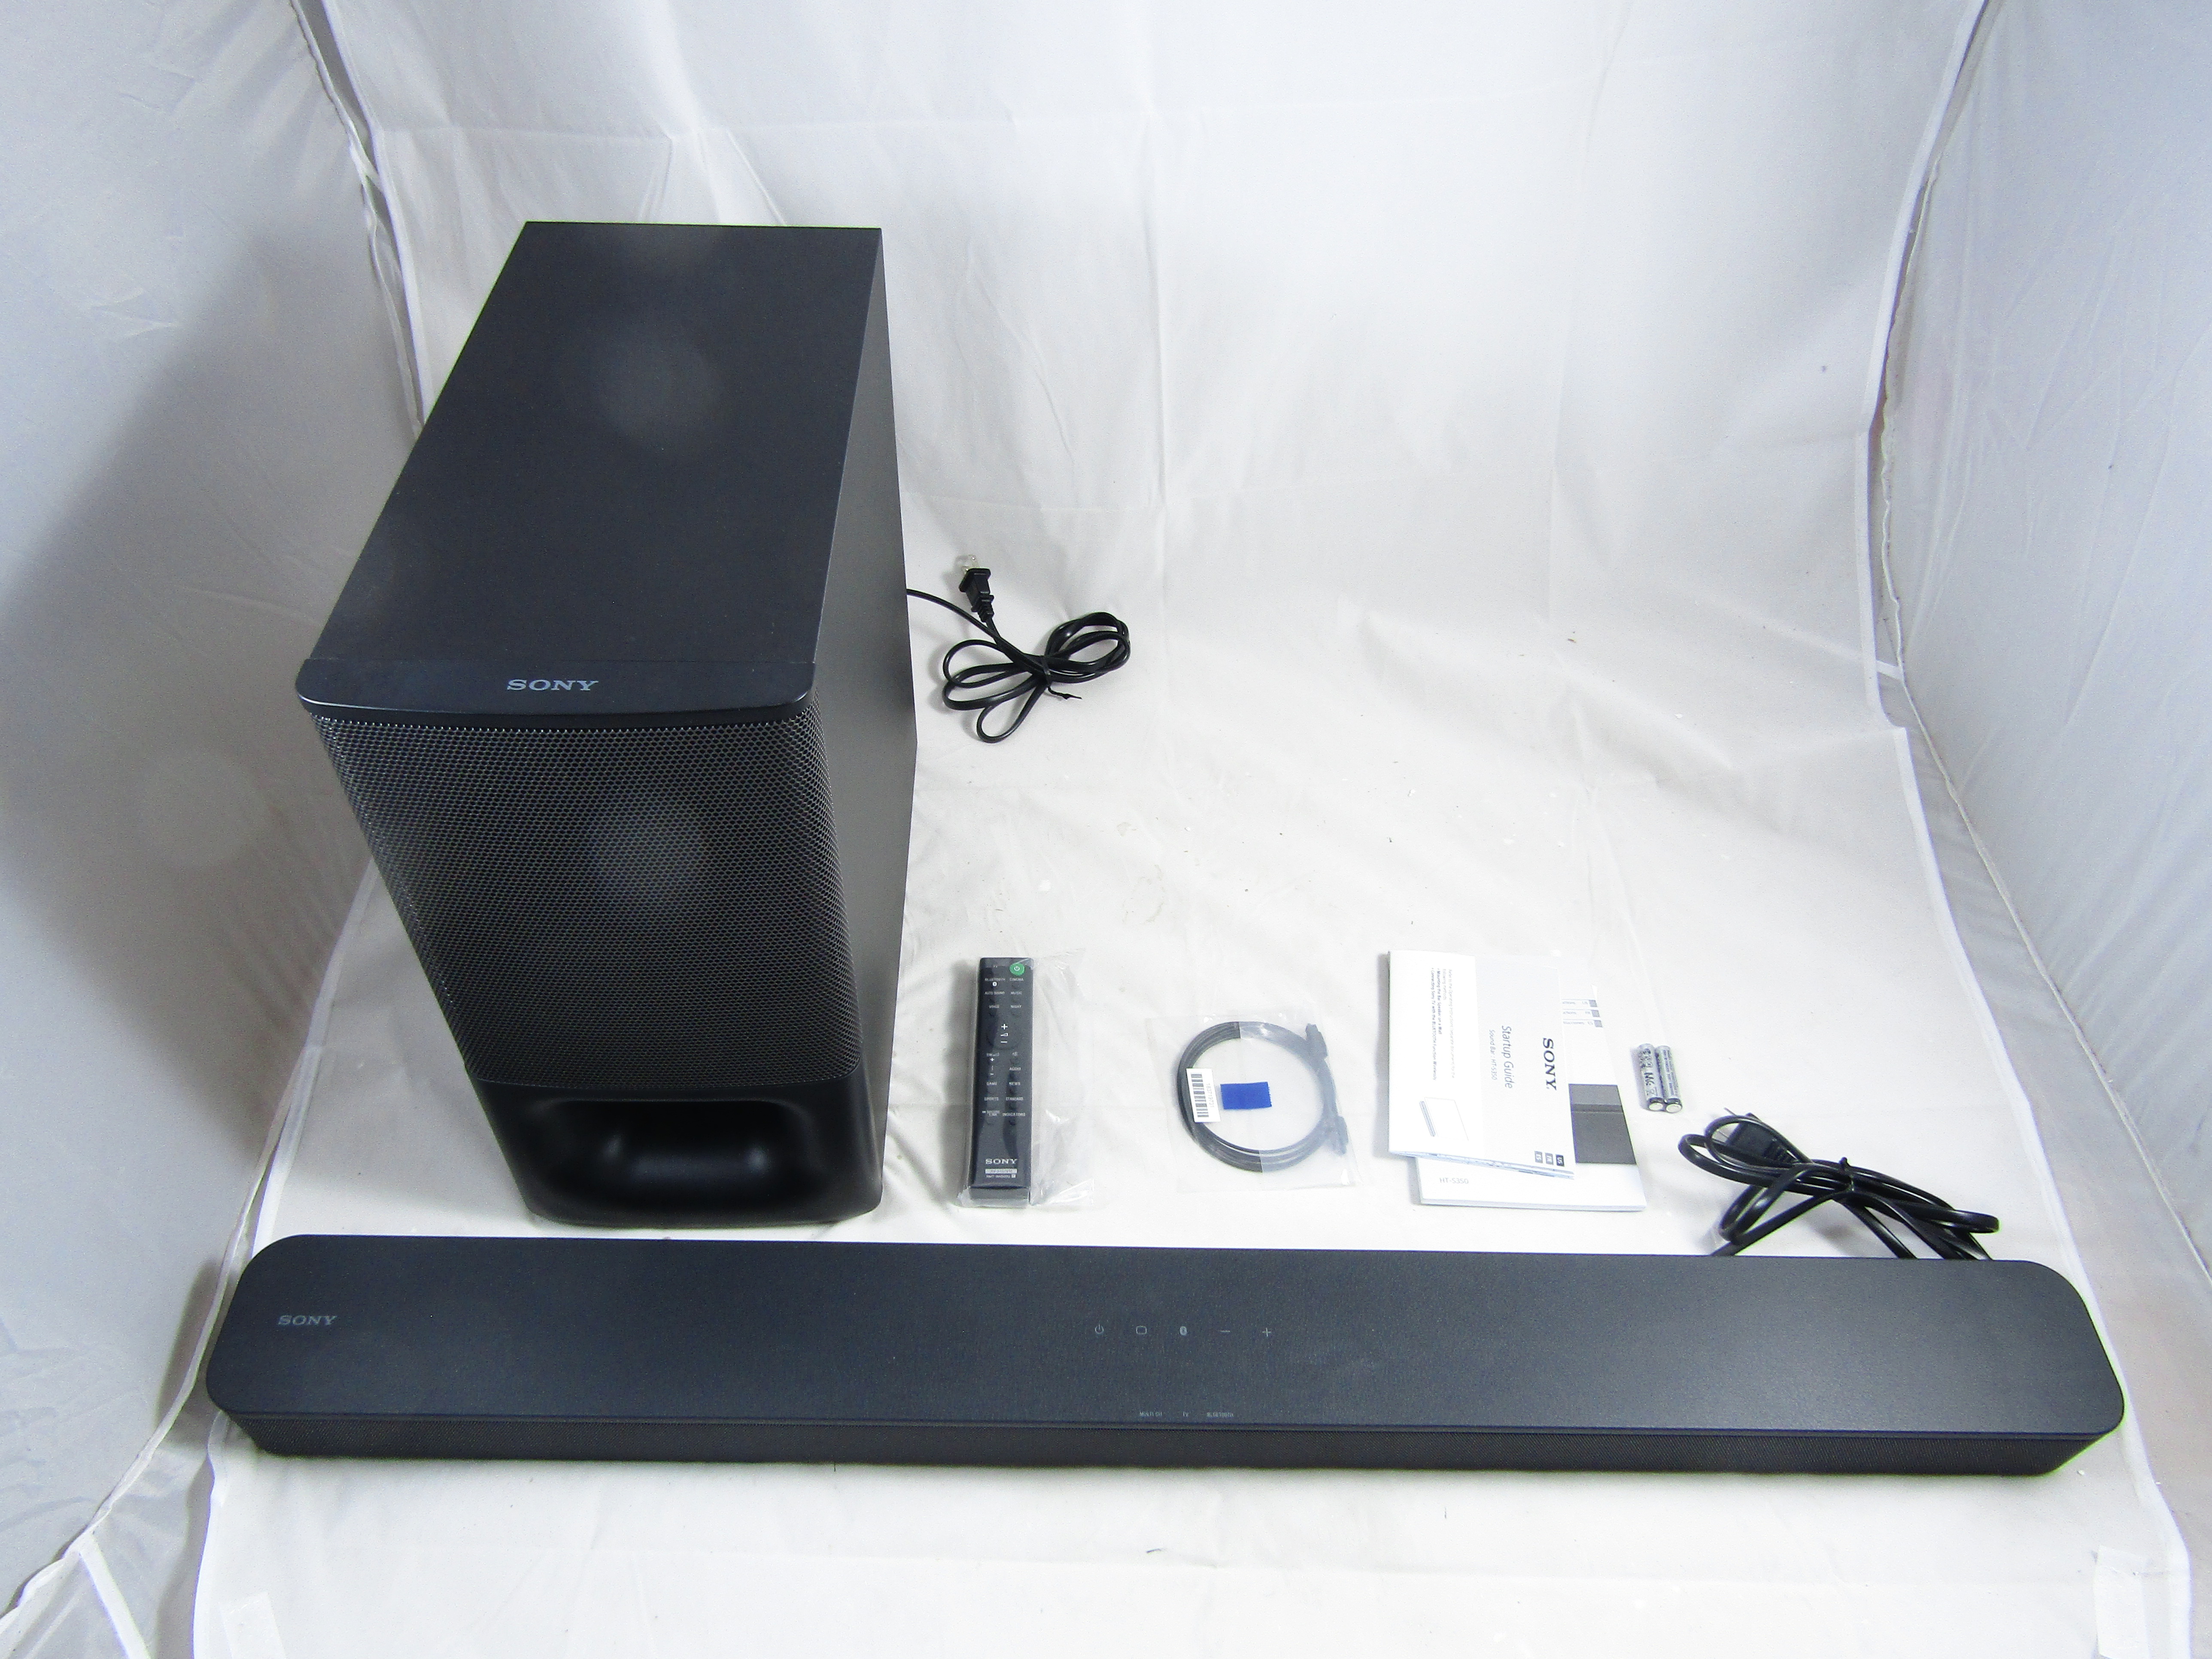 Sony HT-S350 Soundbar with Wireless Subwoofer LN